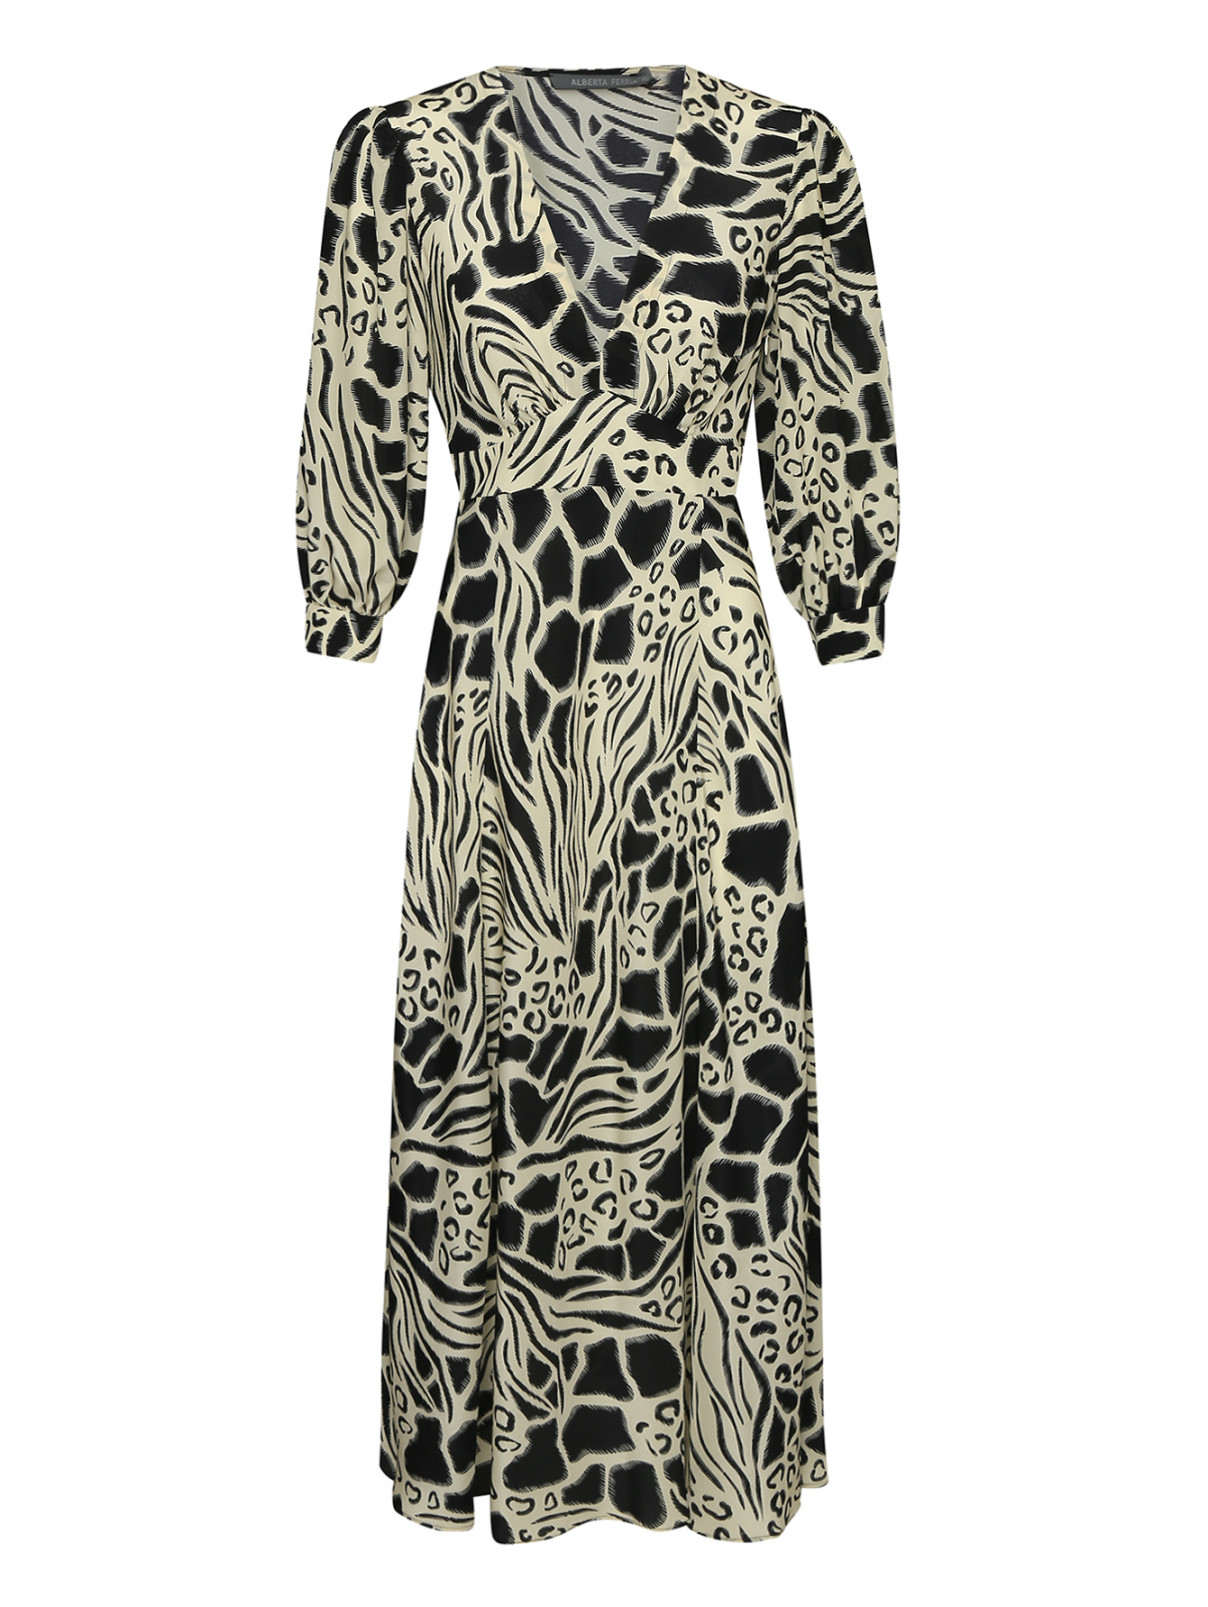 Платье из шелка с принтом и драпировкой Alberta Ferretti  –  Общий вид  – Цвет:  Черный